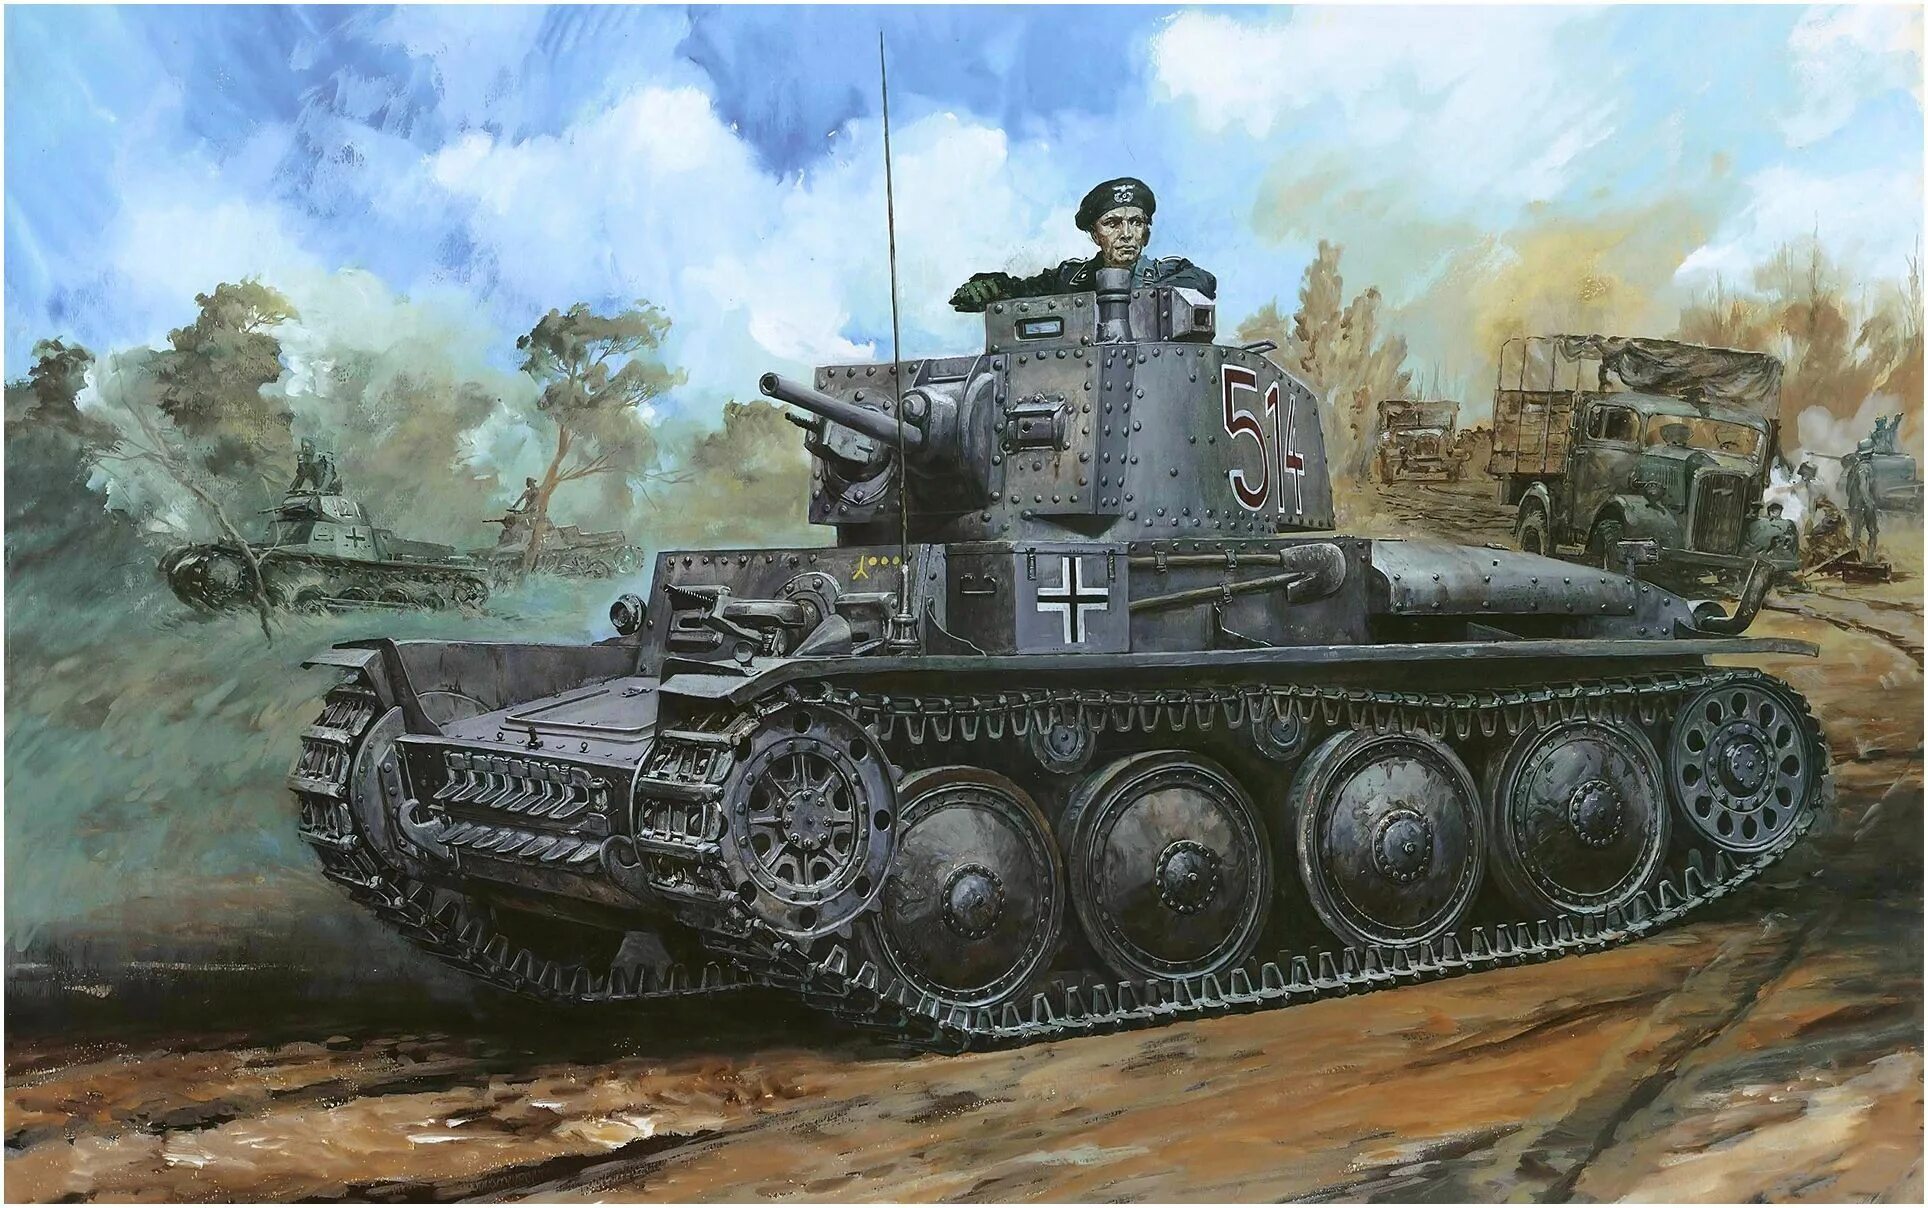 Танк PZ 38 T. Немецкий танк PZ Kpfw 38 t. Lt vz.38 PZKPFW 38 T. PZ 35t 1941. Третья танковая